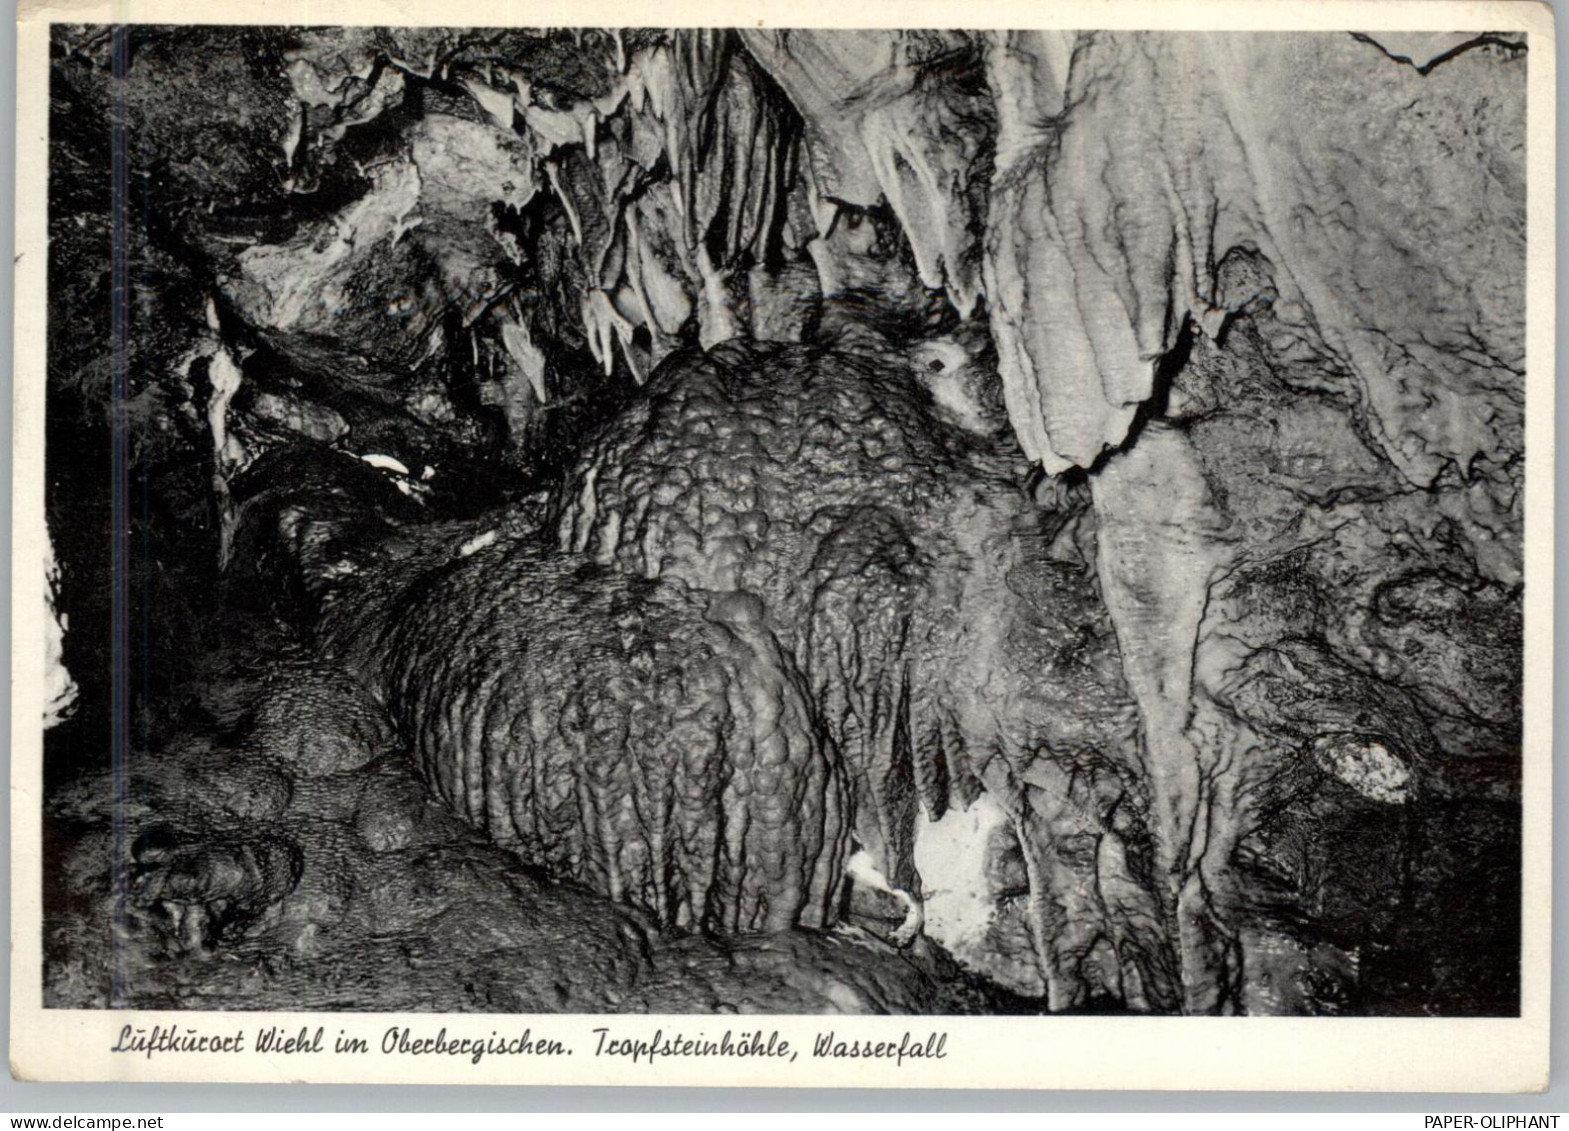 5276 WIEHL, Tropfsteinhöhle, Versteinerter Wasserfall, 1958 - Gummersbach